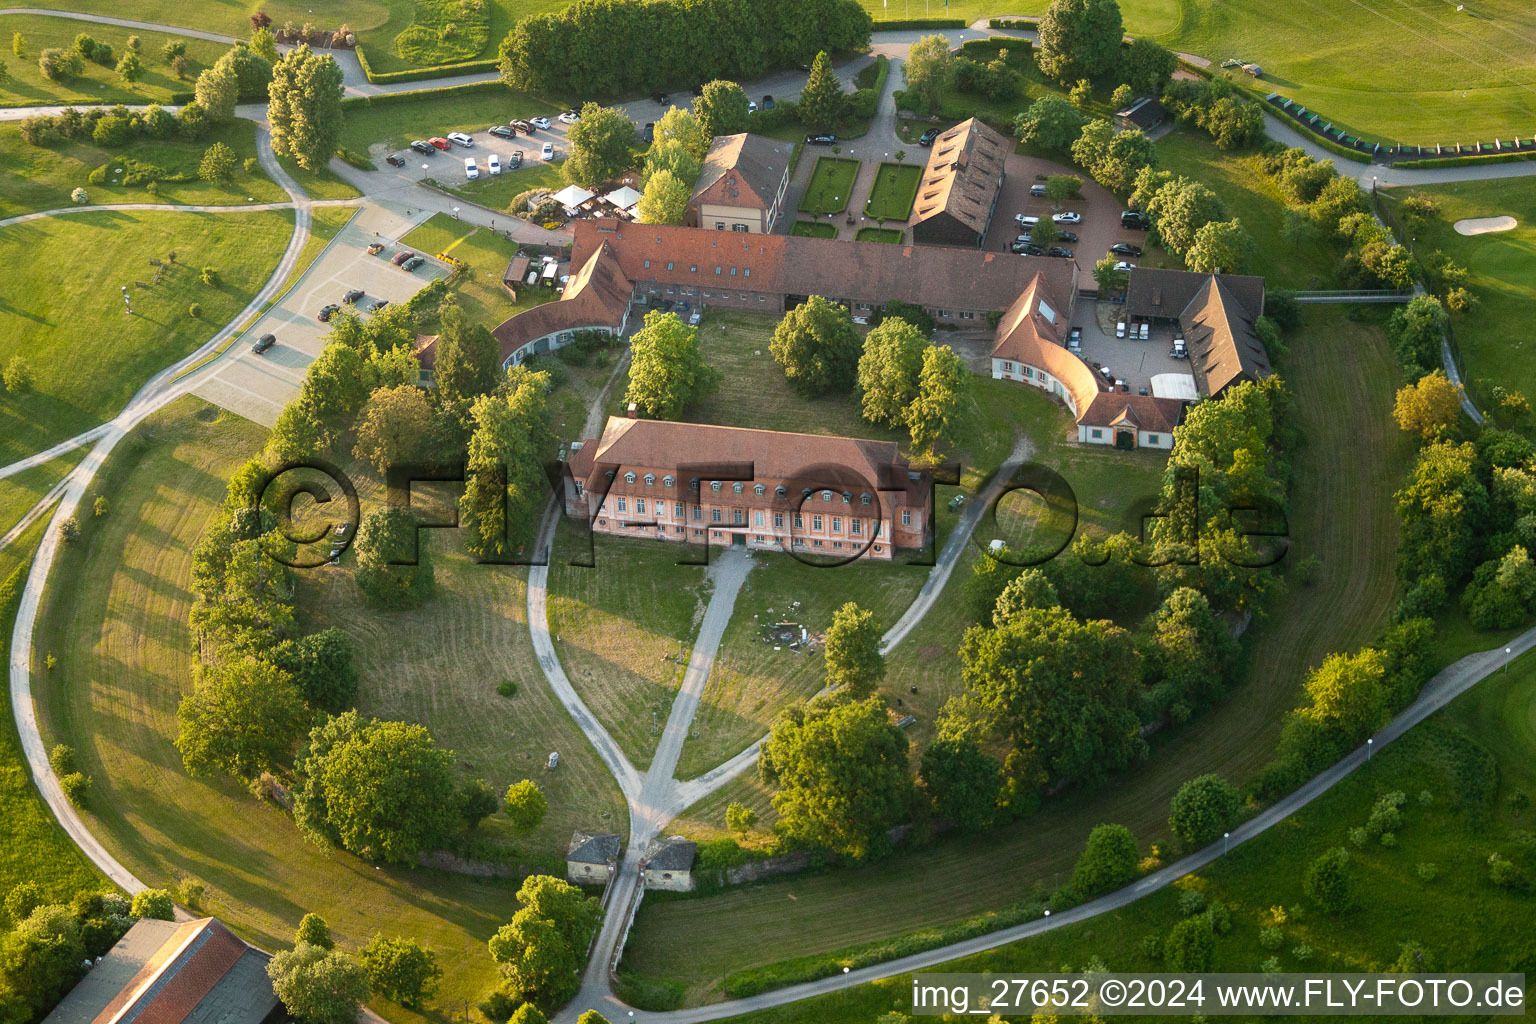 Photographie aérienne de Zone du parcours de golf Hofgut Scheibenhardt eV à le quartier Beiertheim-Bulach in Karlsruhe dans le département Bade-Wurtemberg, Allemagne